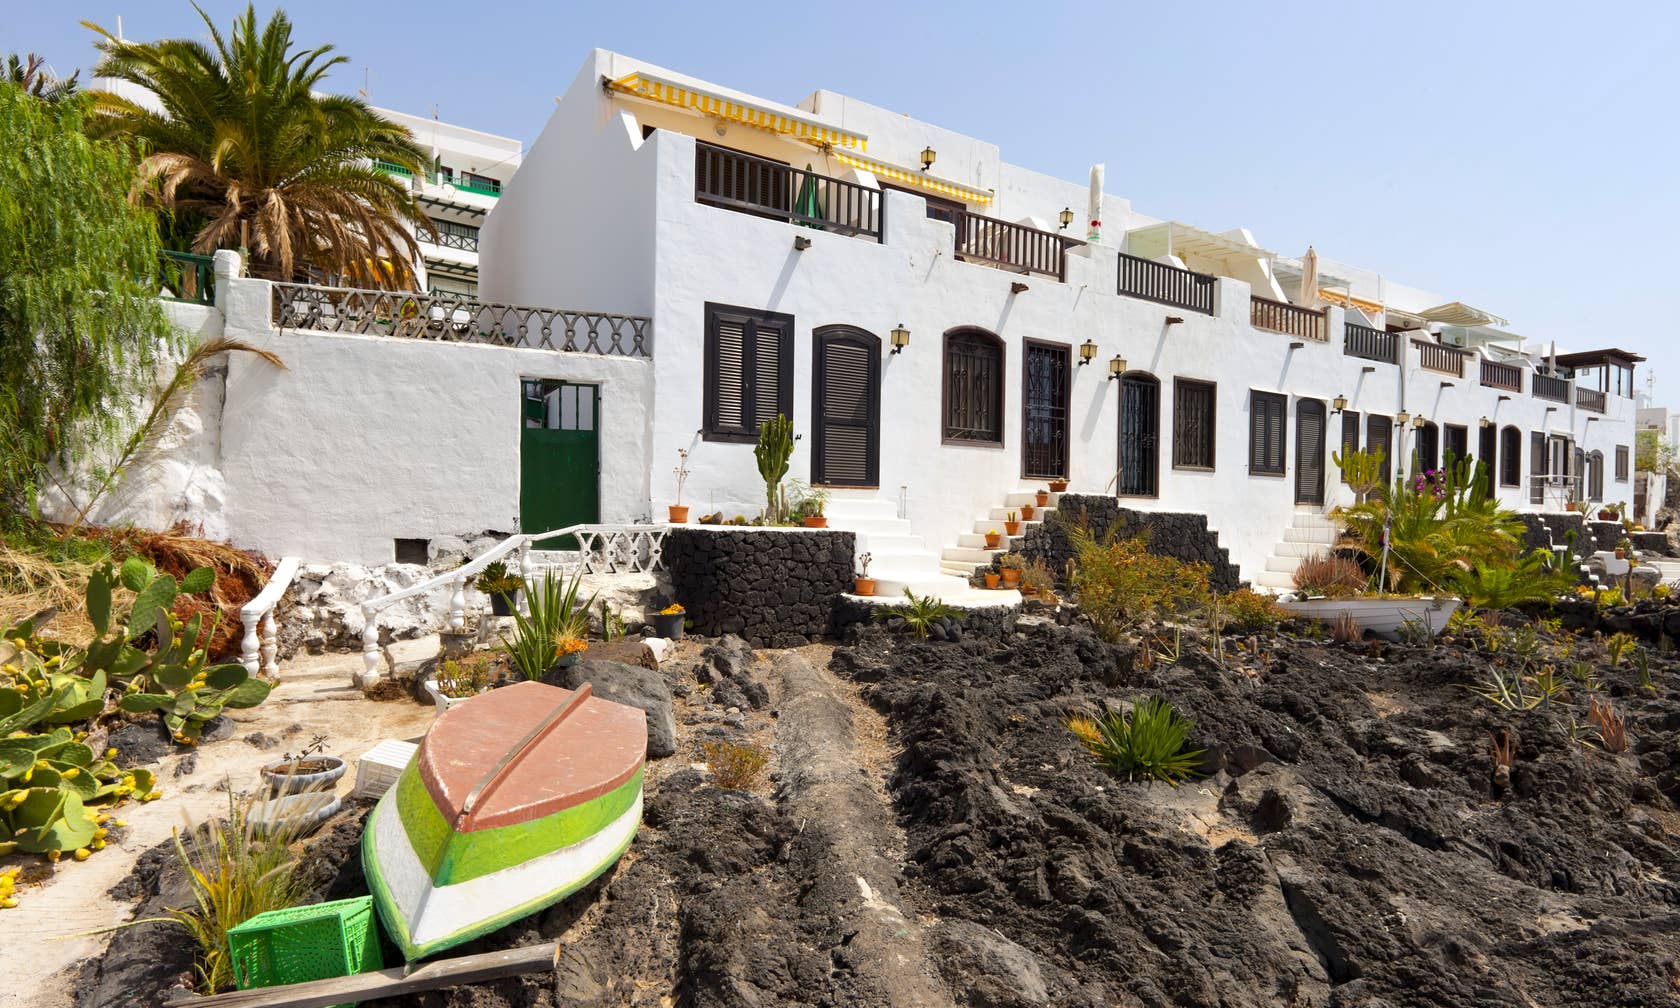 Vacation rentals in Puerto del Carmen